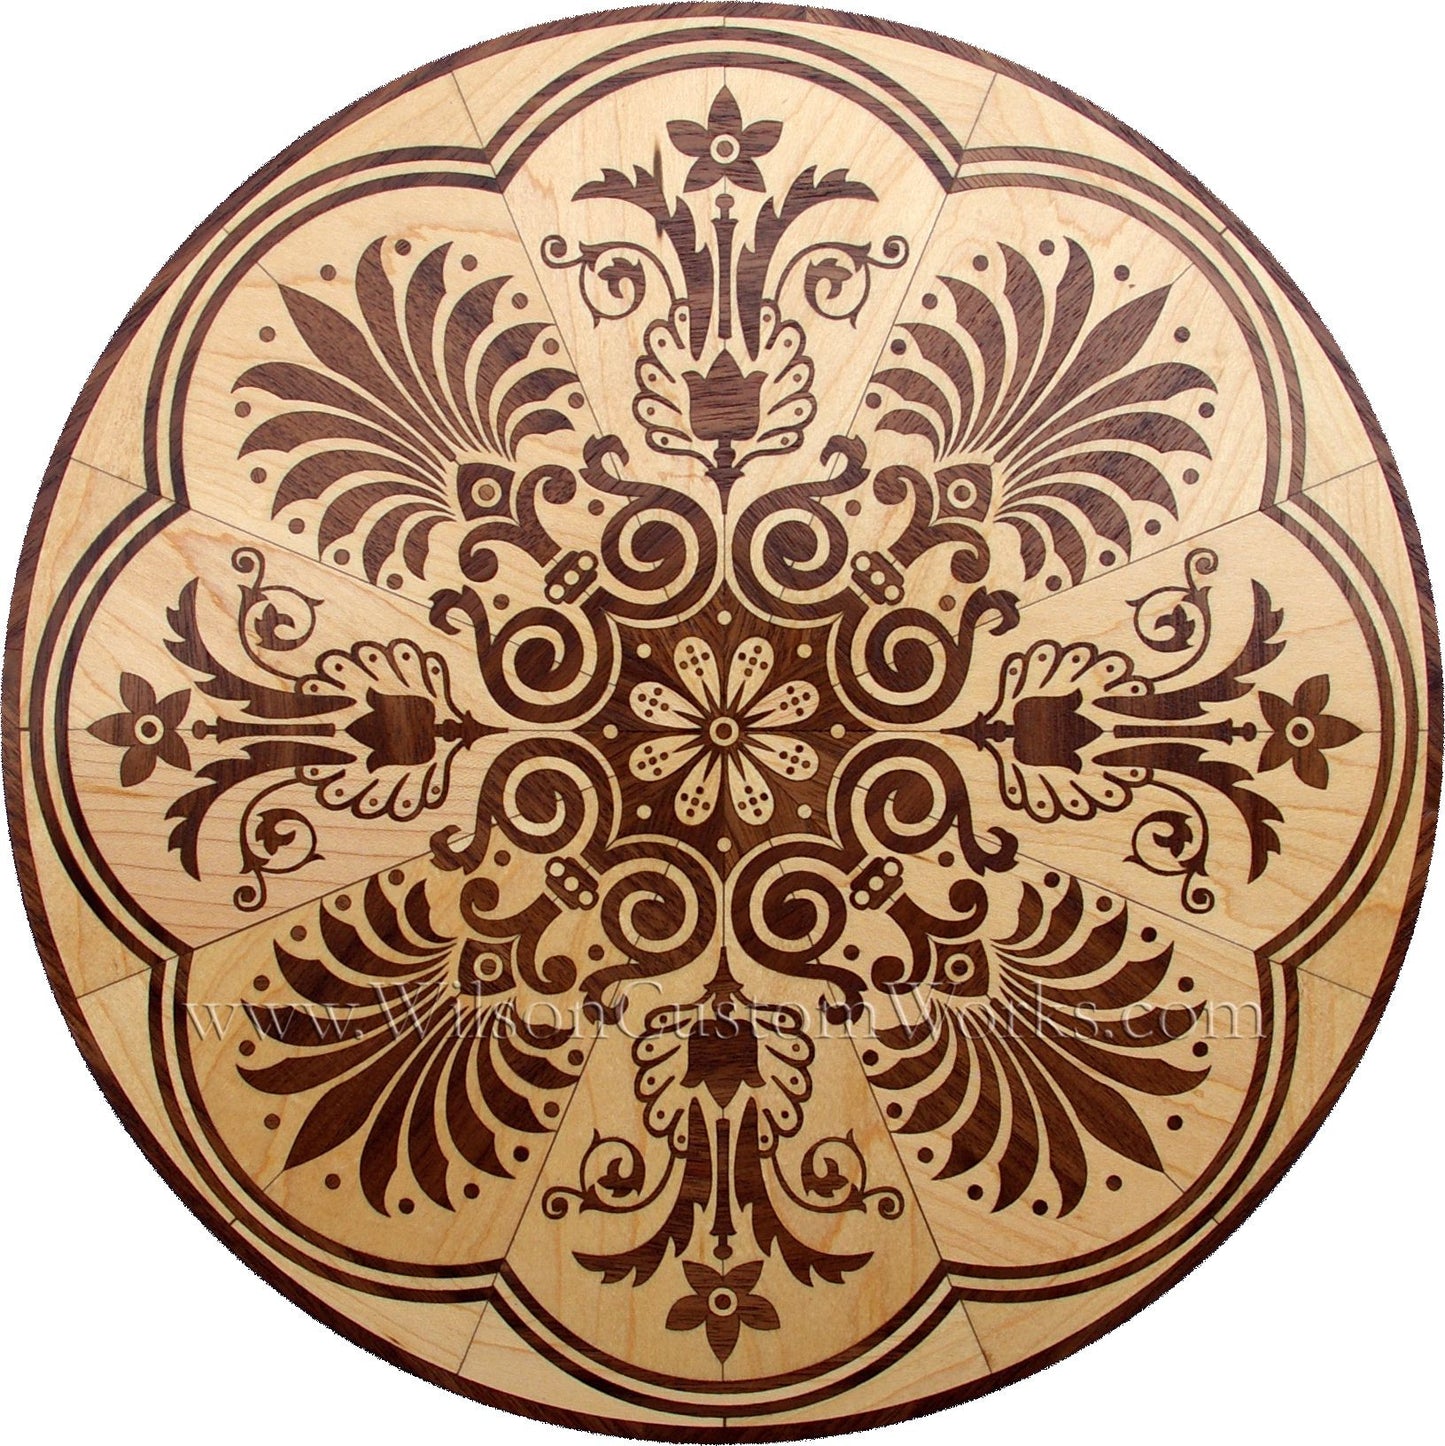 Wilson Custom Works hardwood wood floor inlay medallion honolulu design